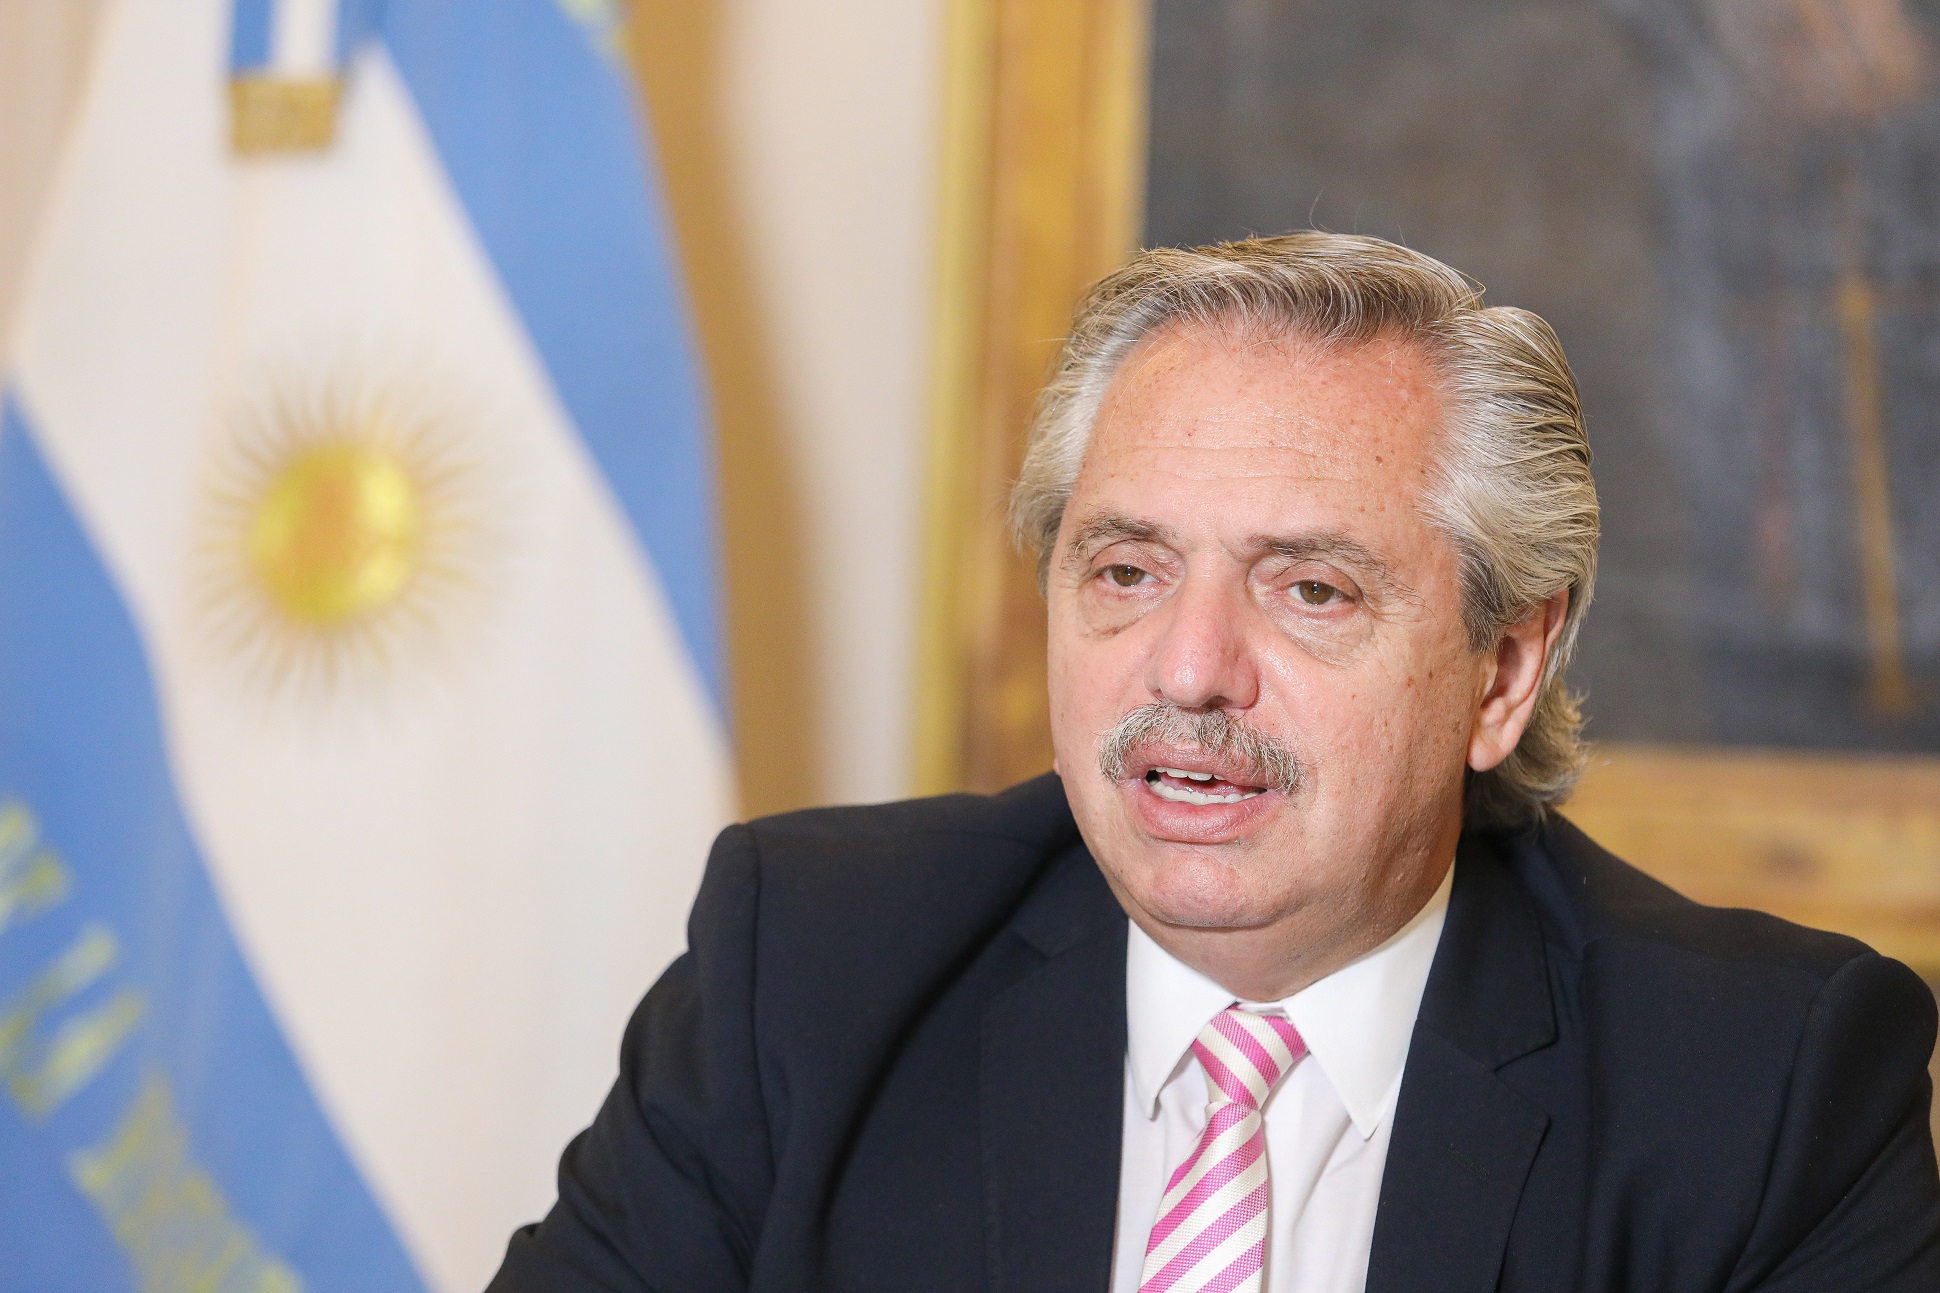 El Presidente anunció un mayor compromiso de la Argentina en la lucha contra el cambio climático